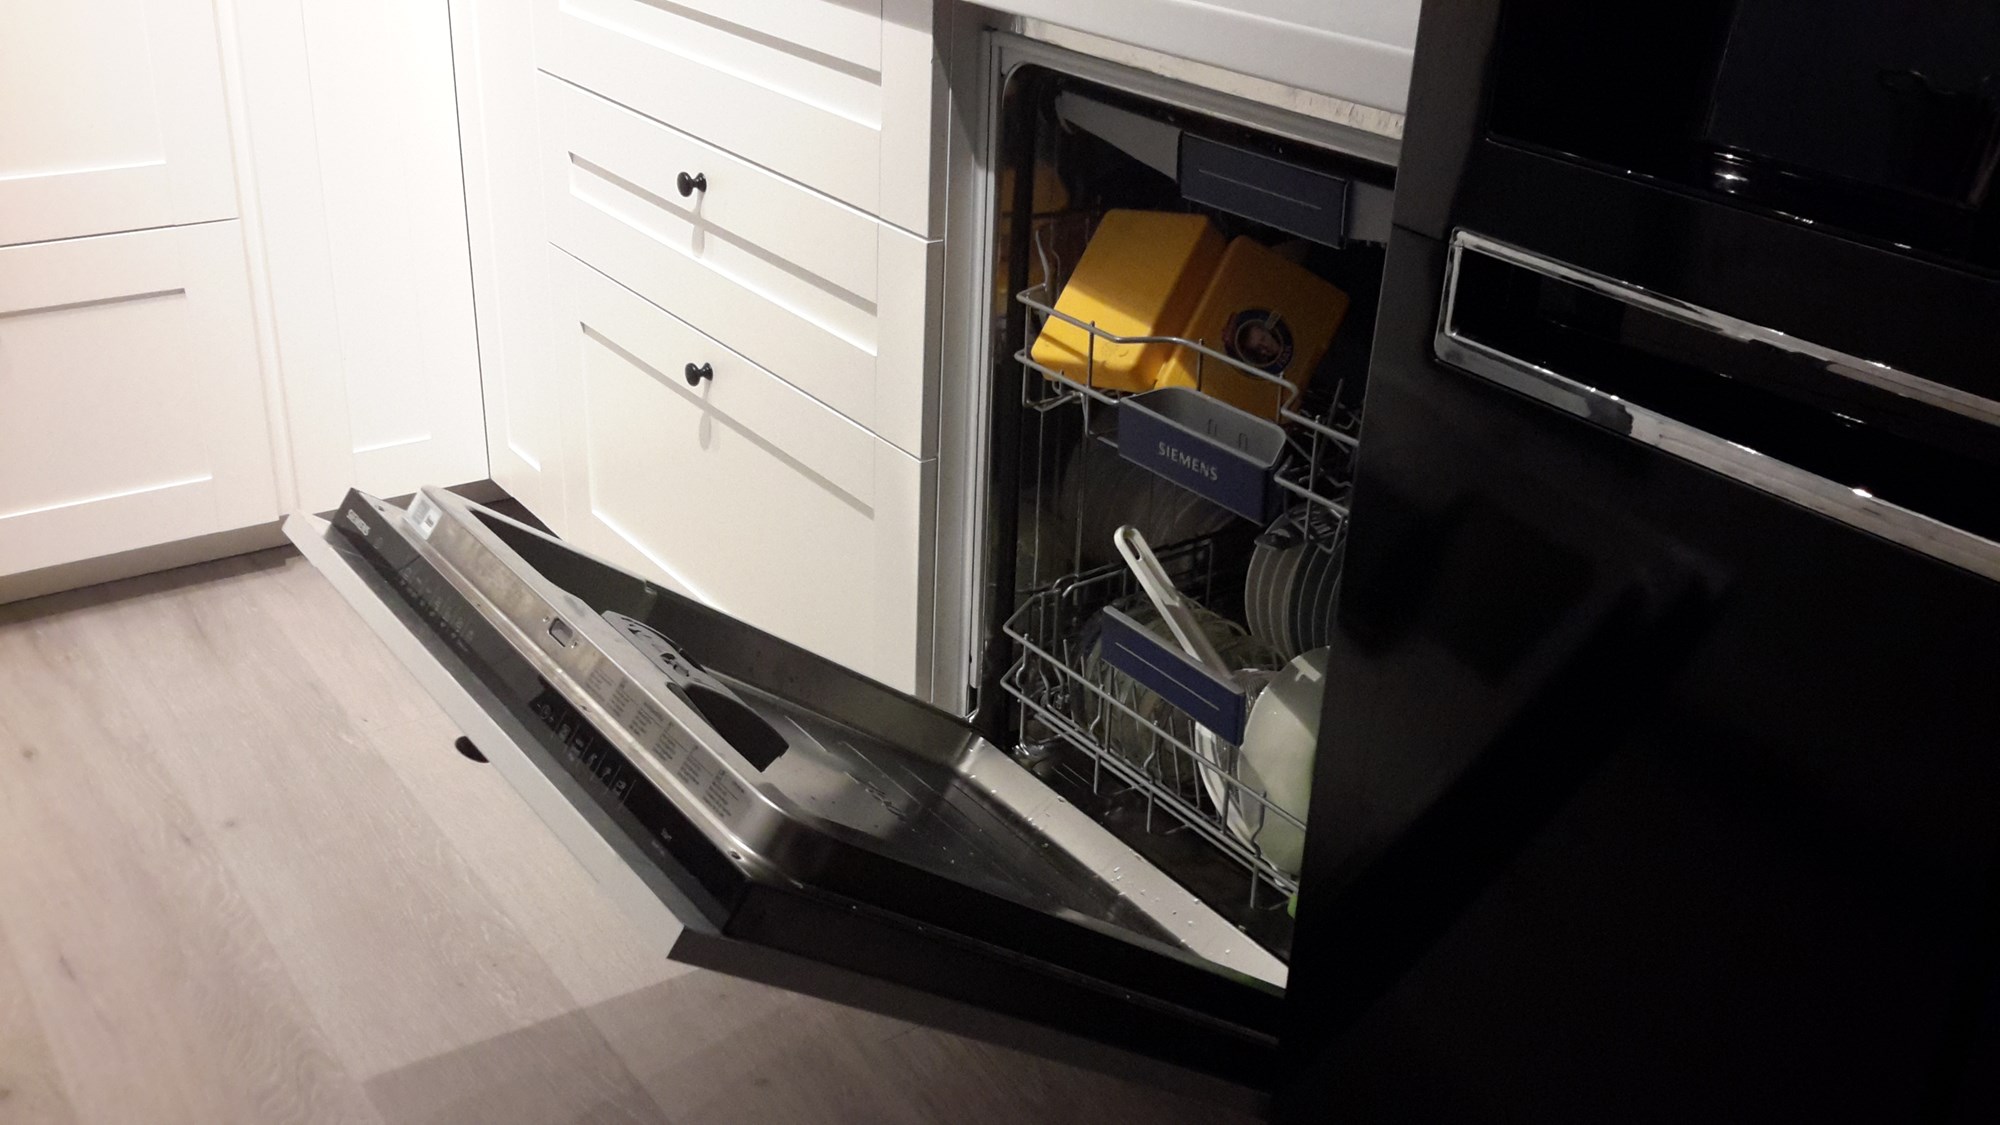 Bosch oppvaskmaskin passer ikke i den nye kjøkkenserien til IKEA. -  - petter87